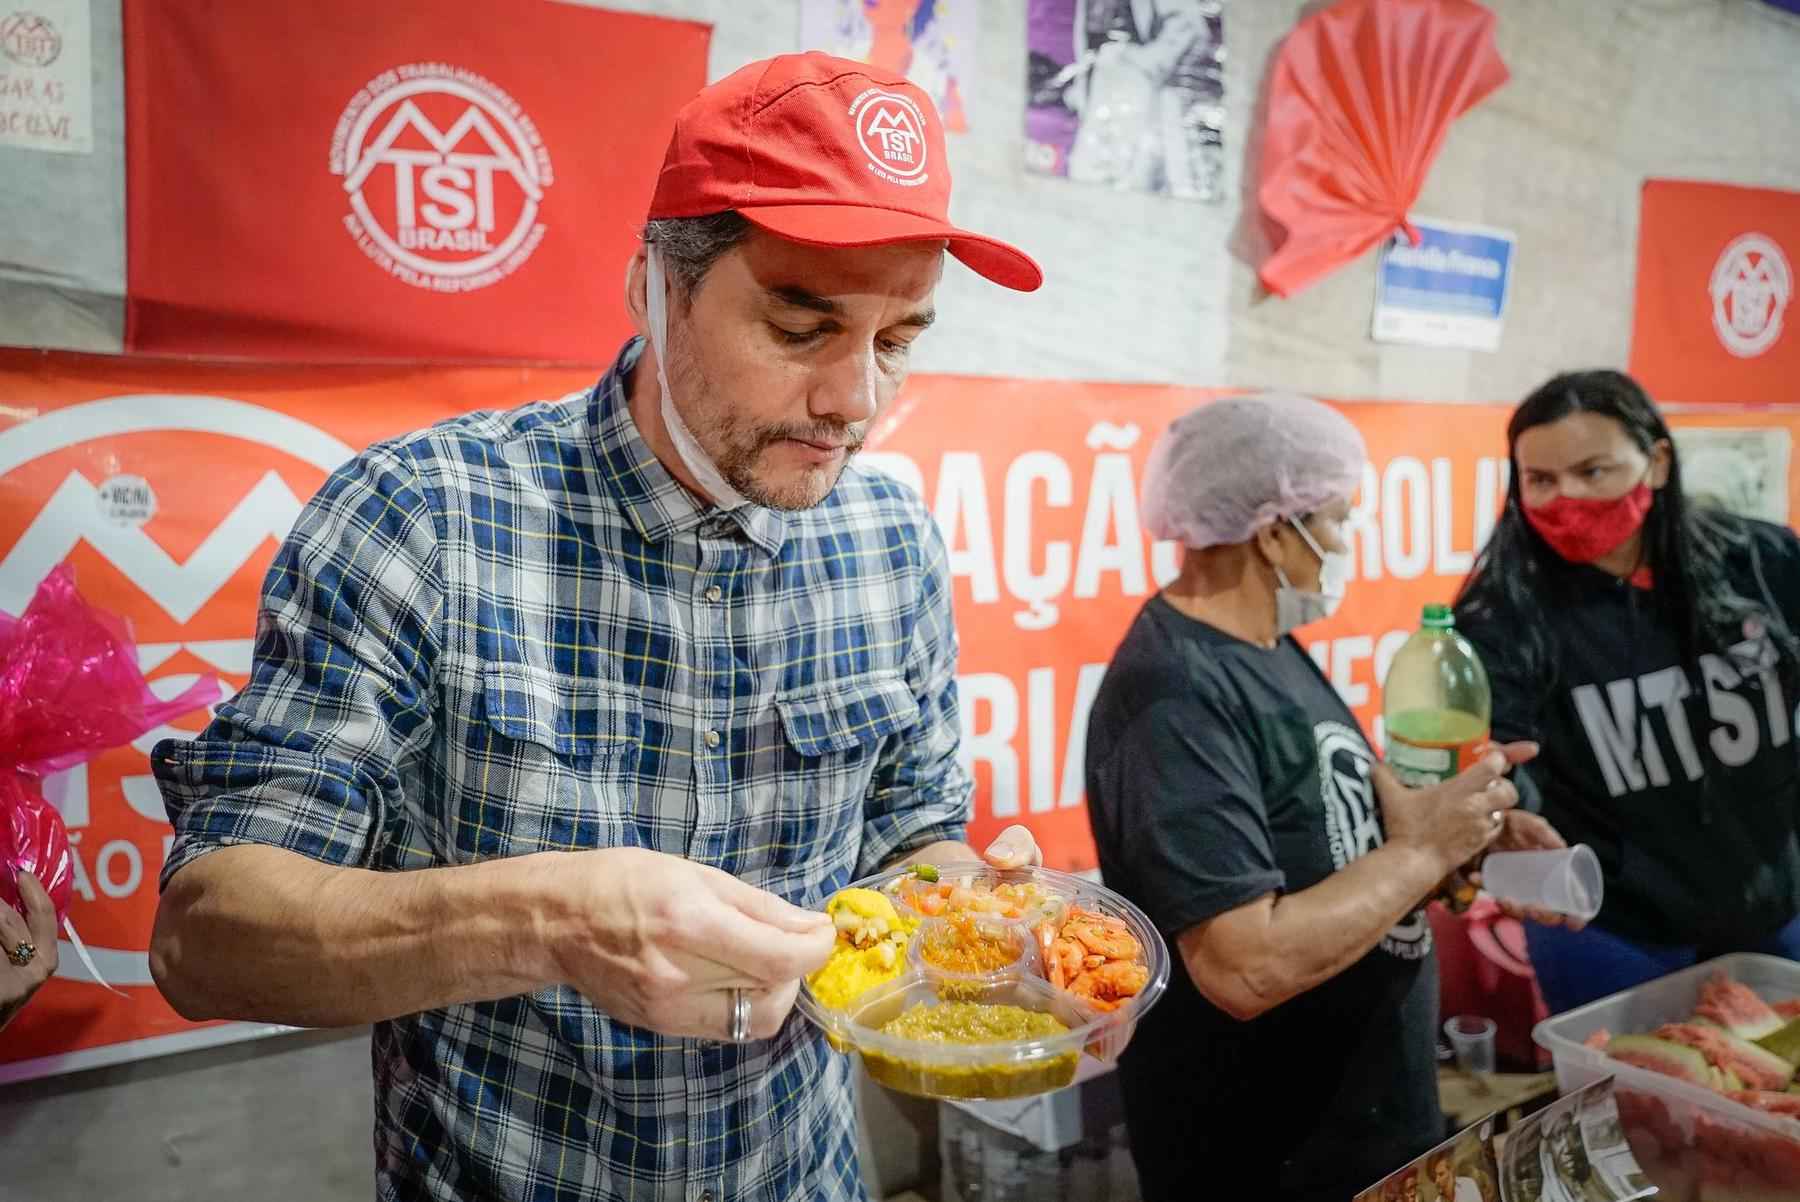 Eduardo Bolsonaro debocha de camarão do MTST, mas alimento foi doado - MTST/Divulgação